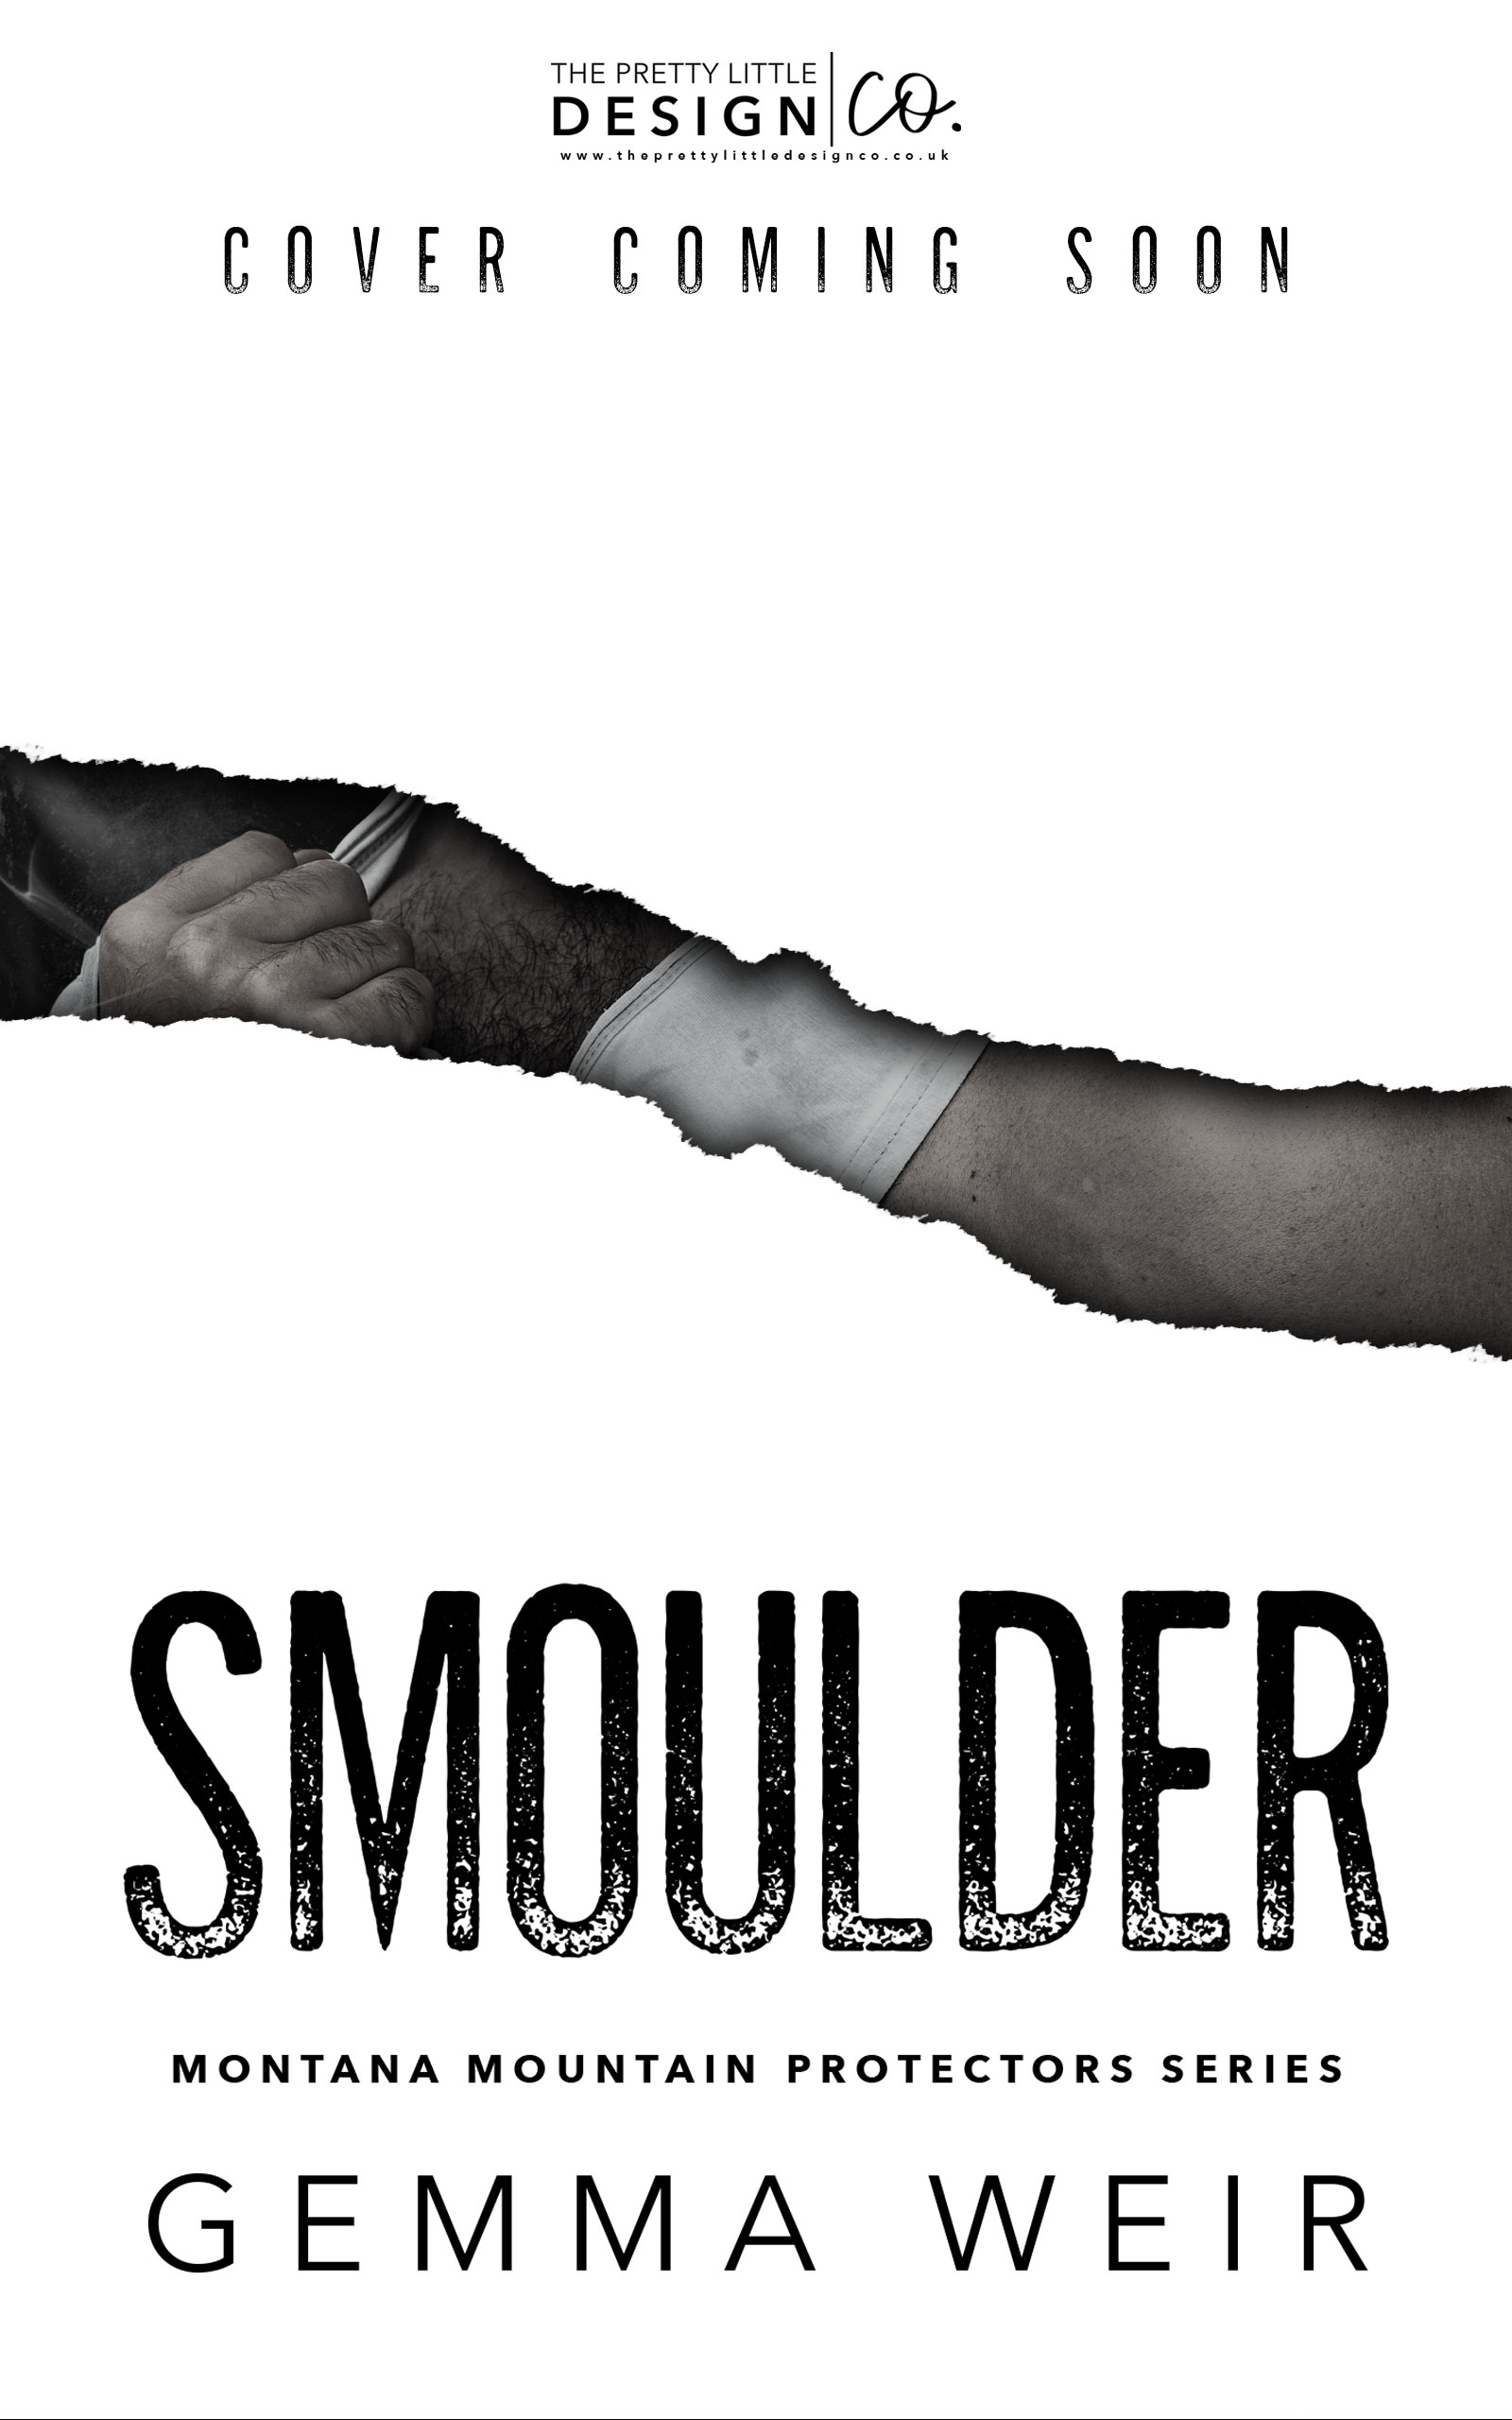 Smoulder - ebook teaser